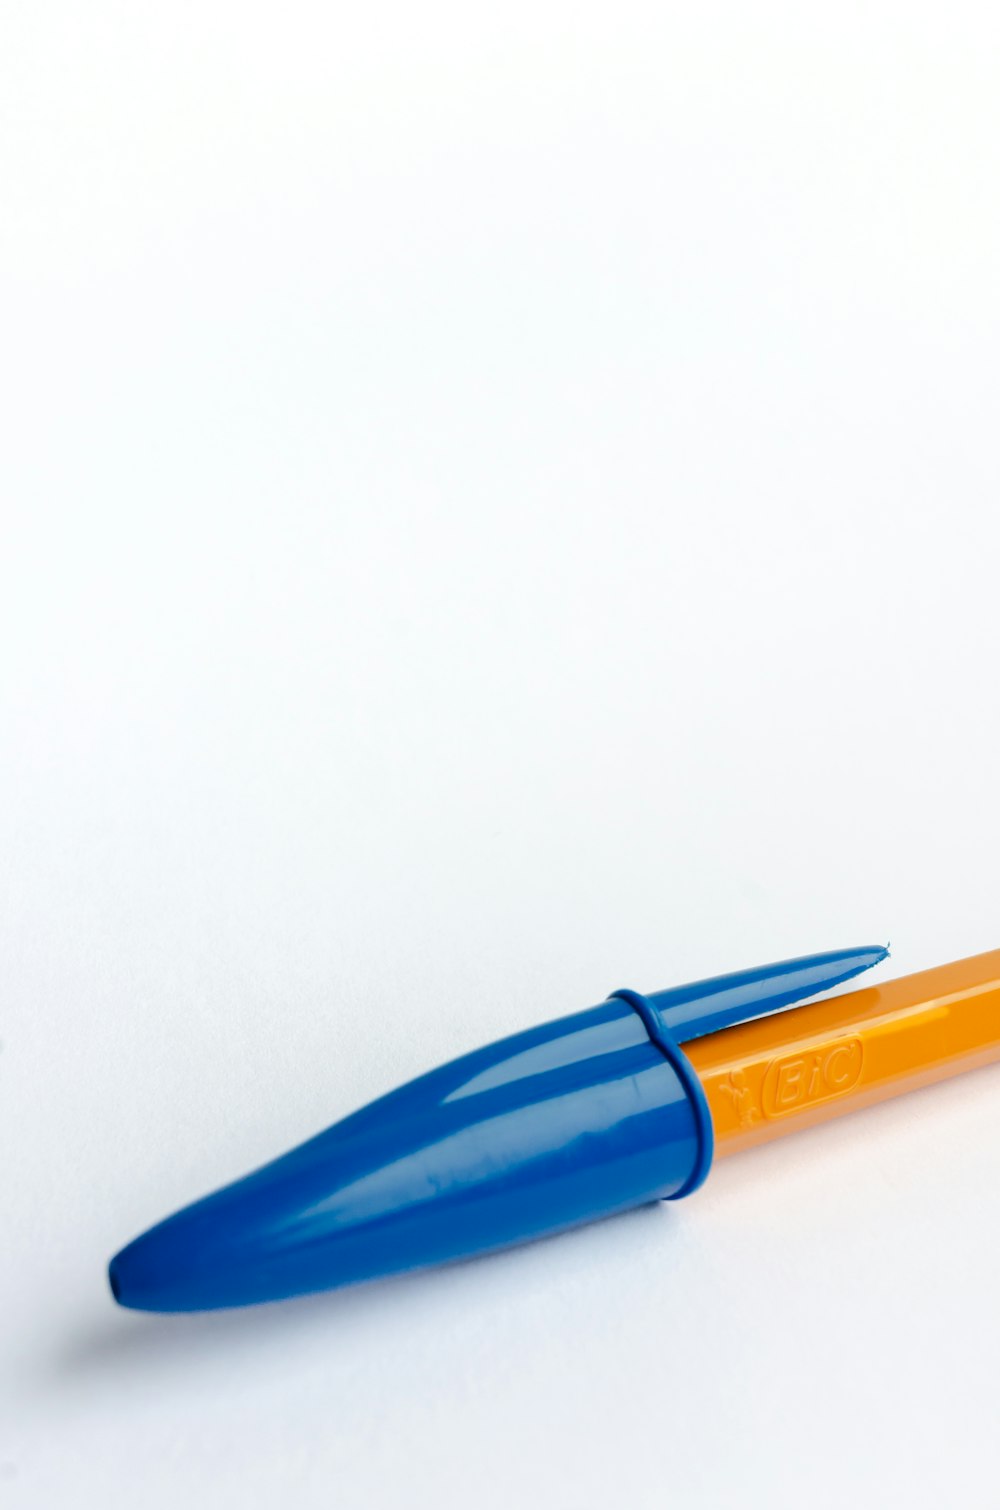 흰색 테이블 위에 놓인 파란색과 주황색 펜